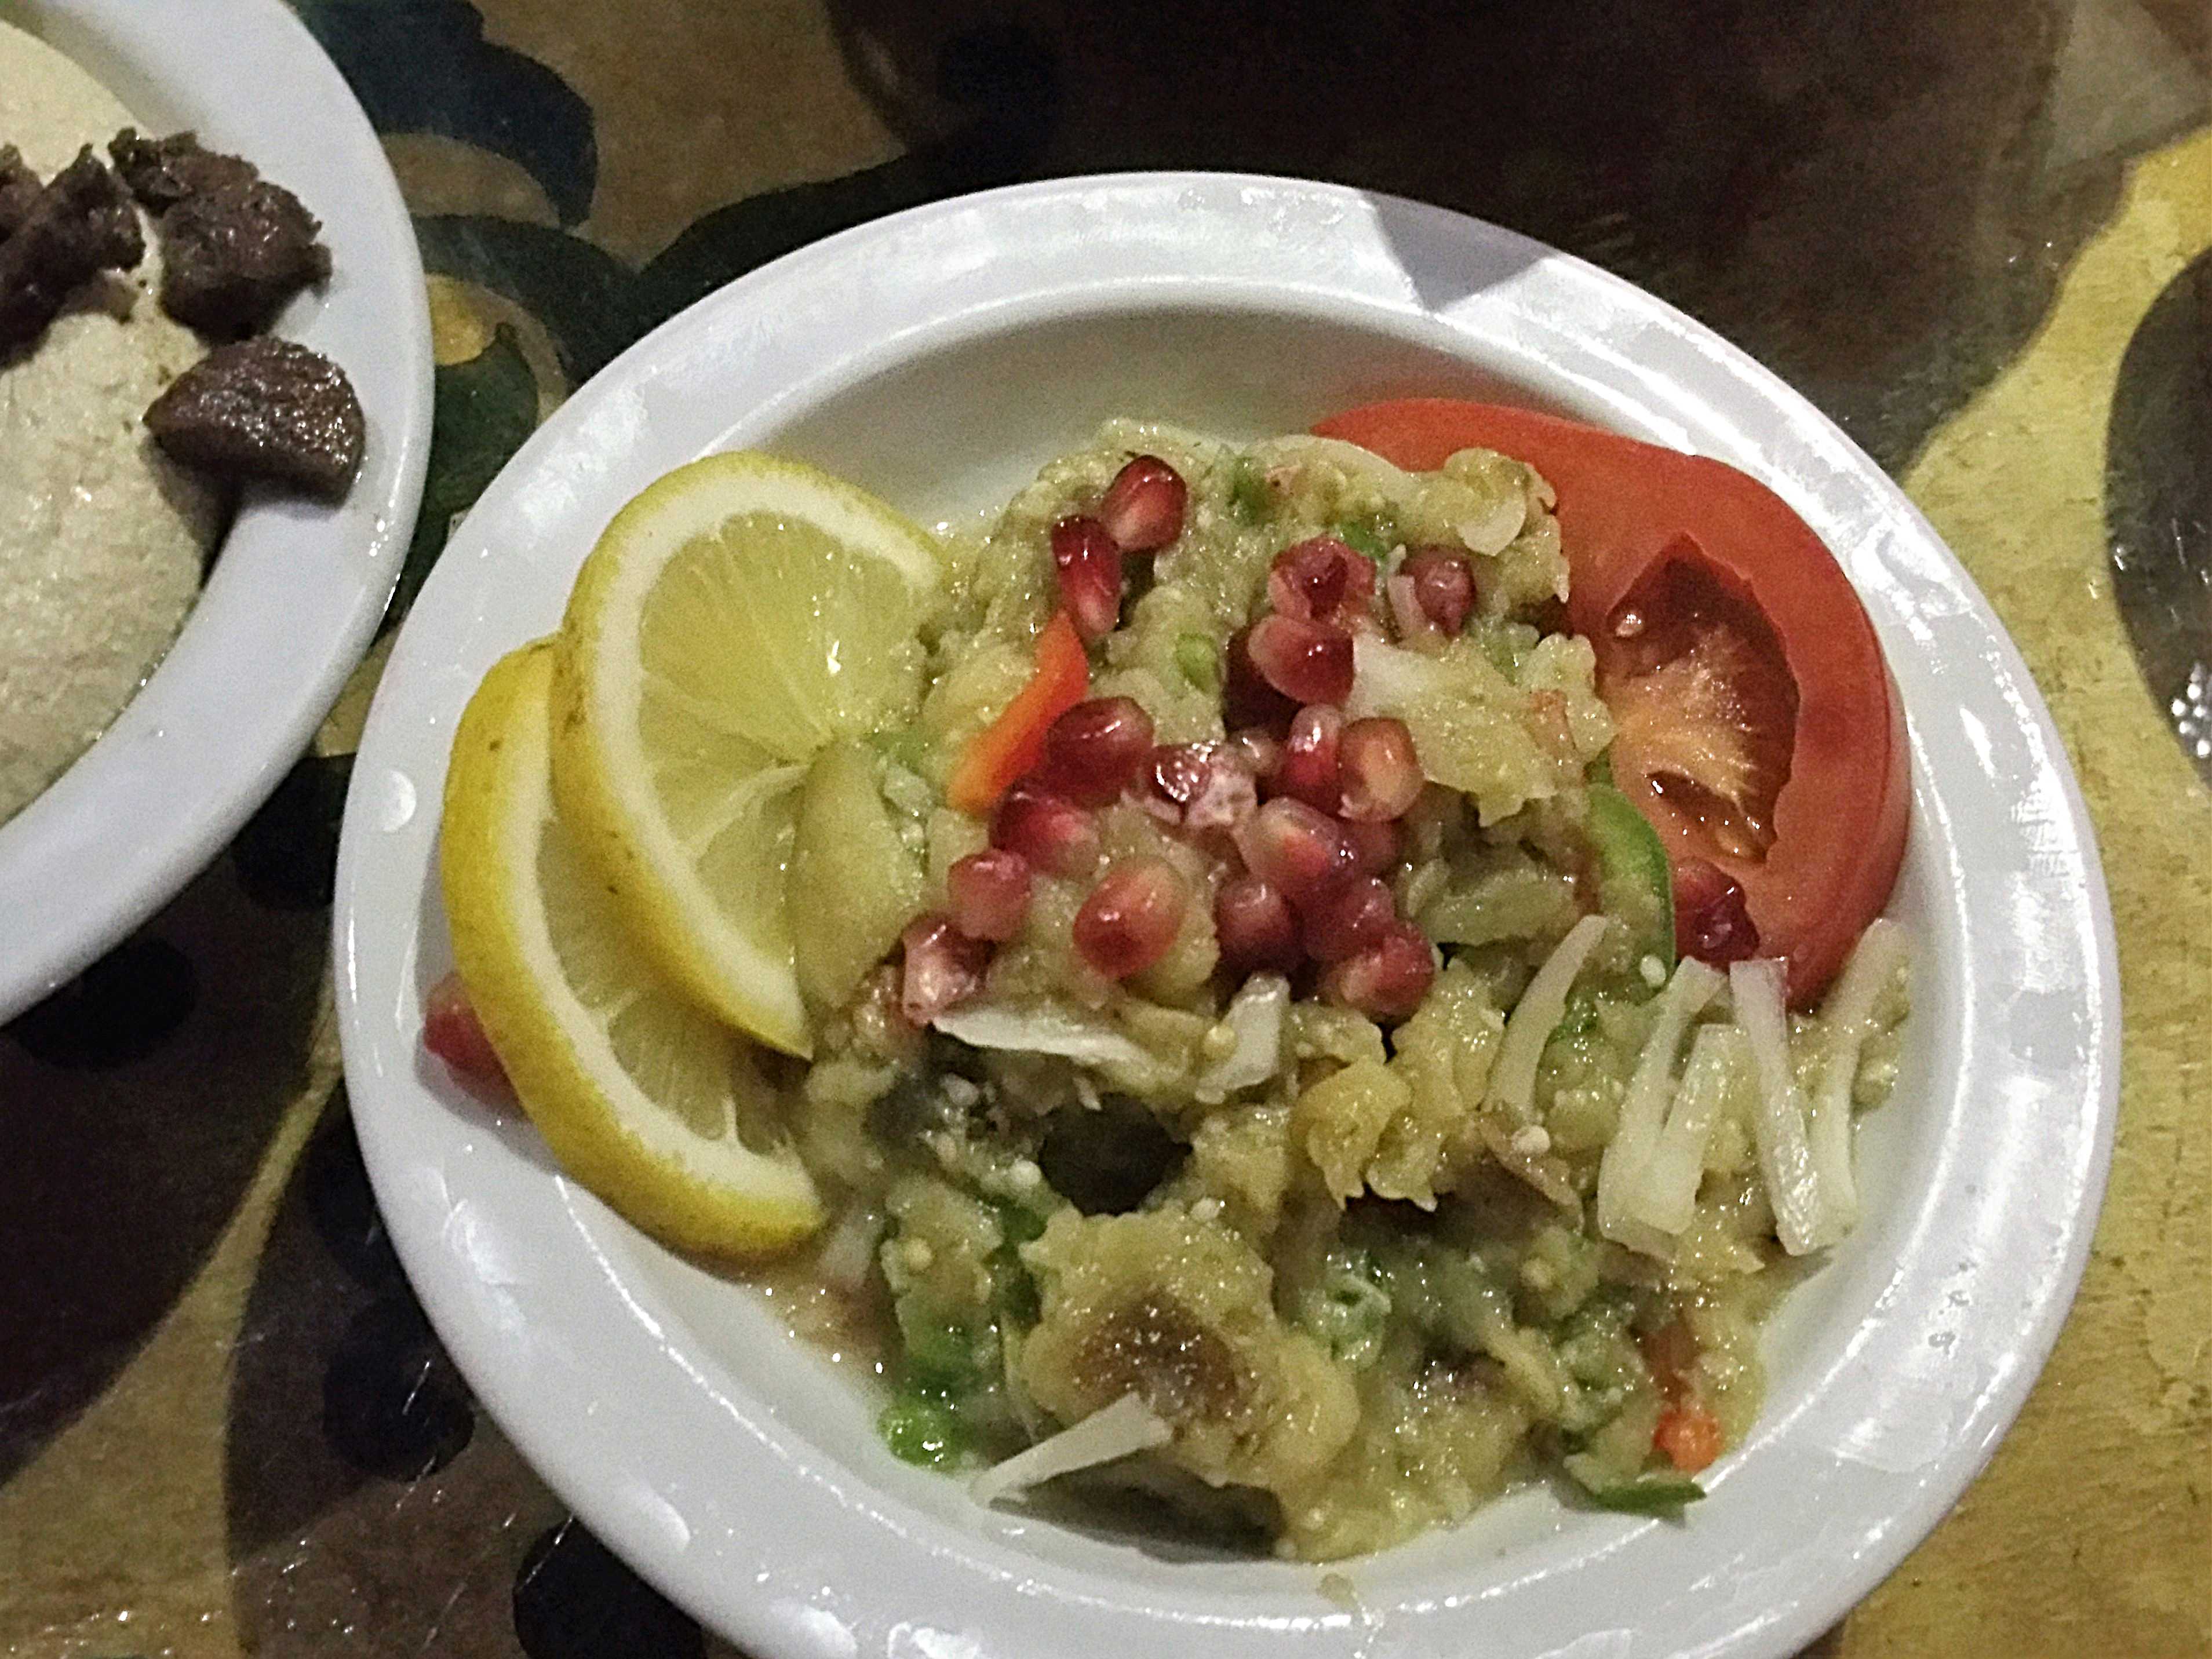 Taboula Lebanese moussaka